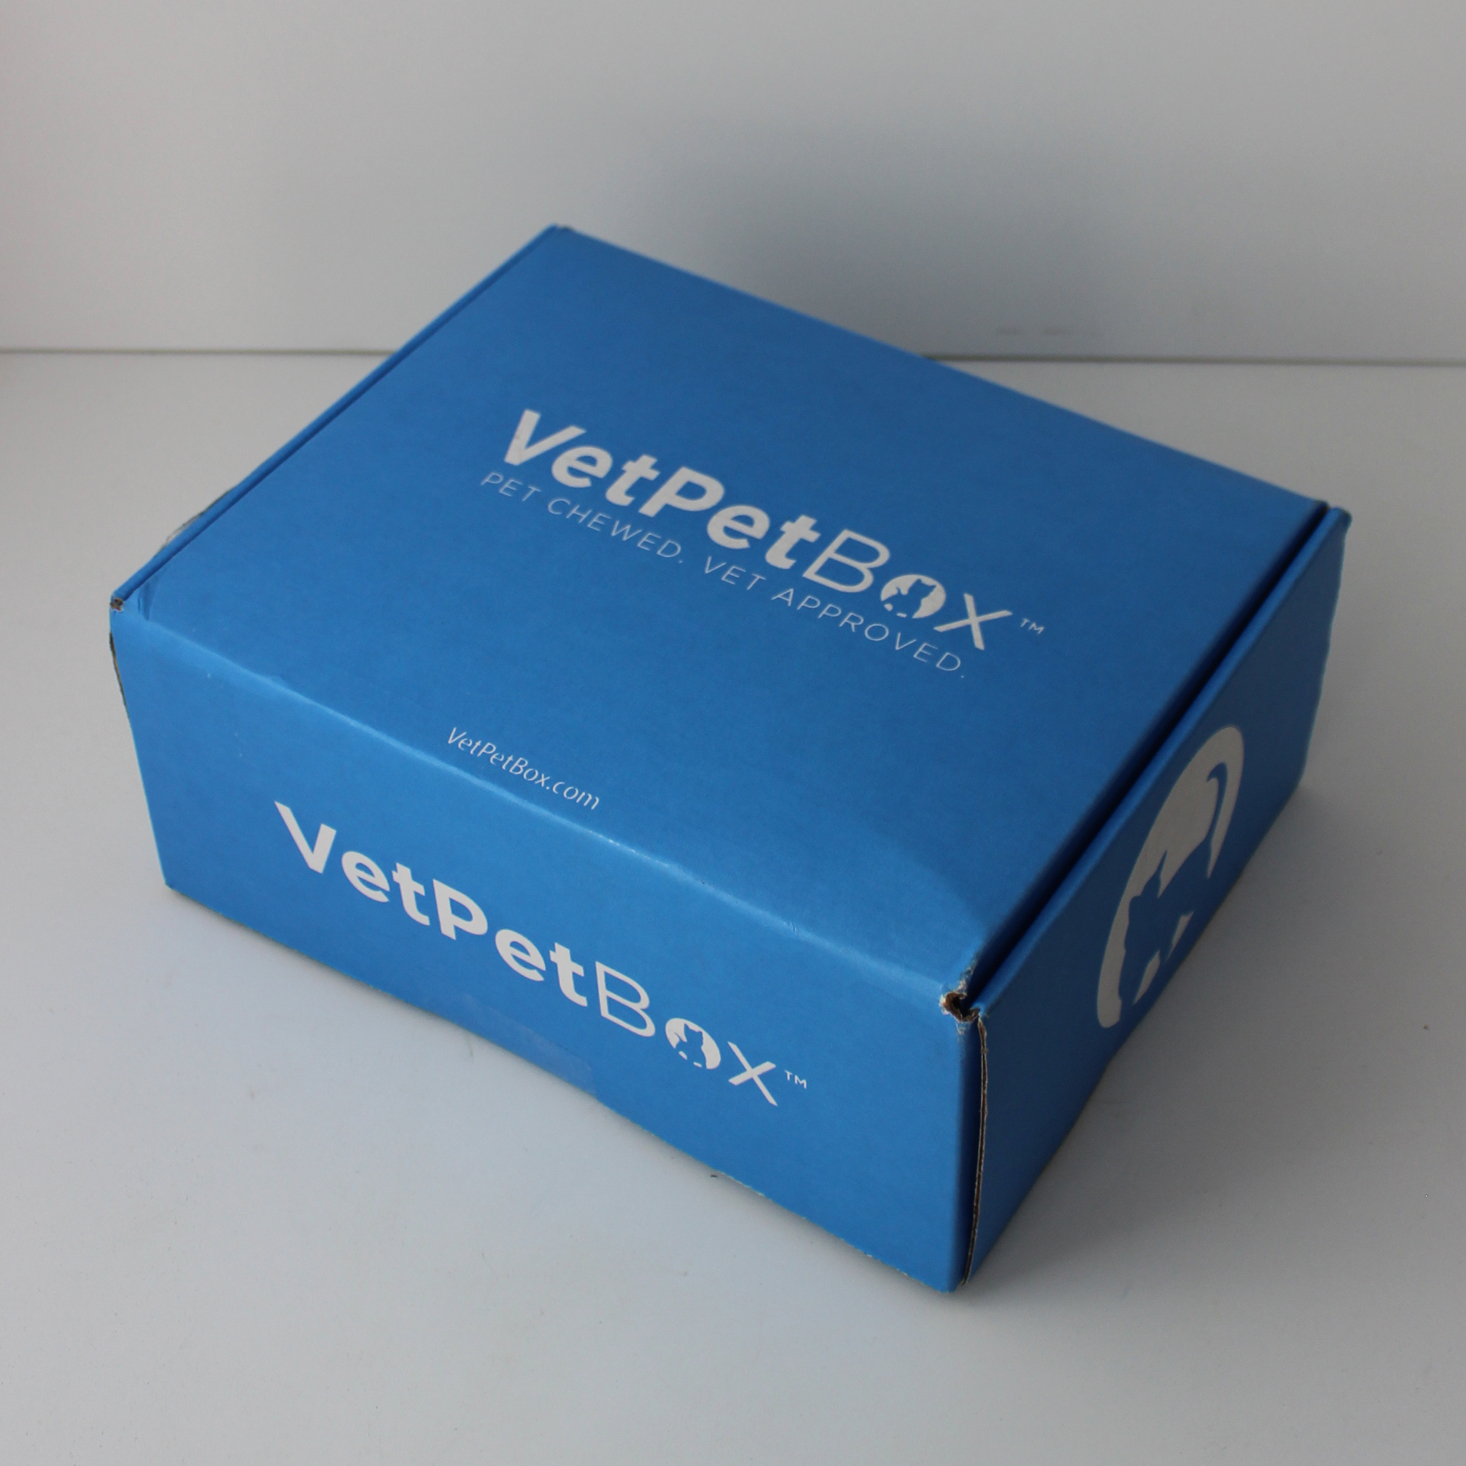 VetPet Box Cat Subscription Review + Coupon – April 2021